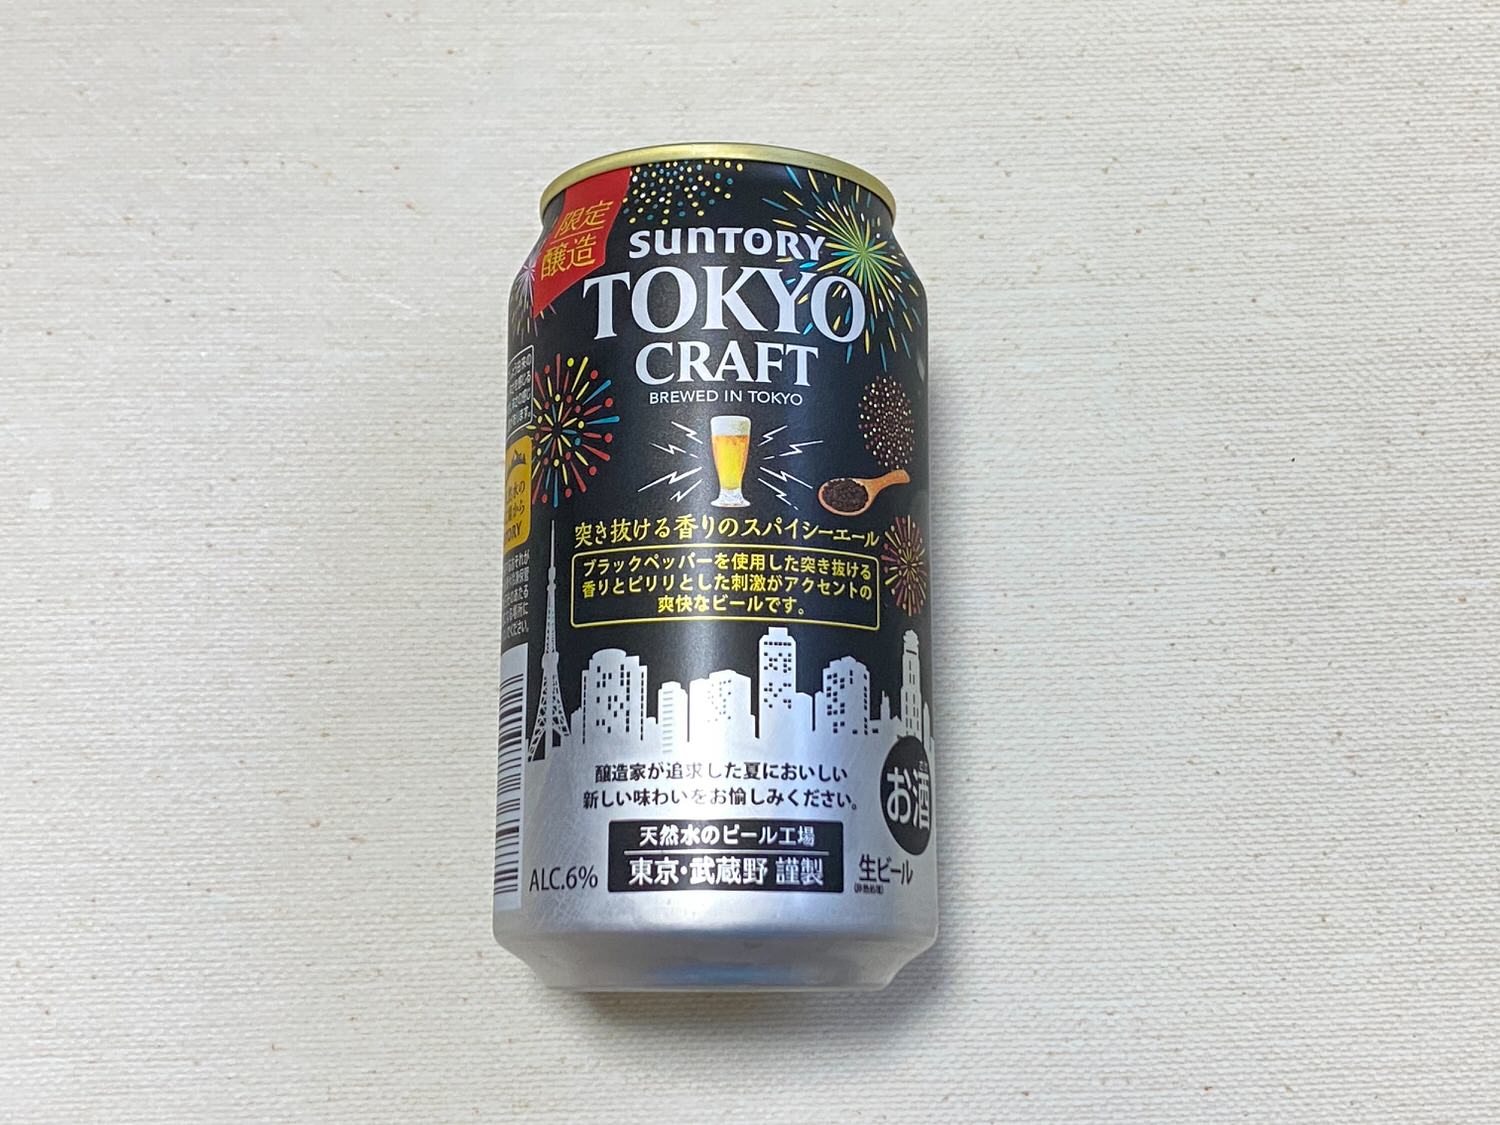 Tokyo craft spicy ale 01 04